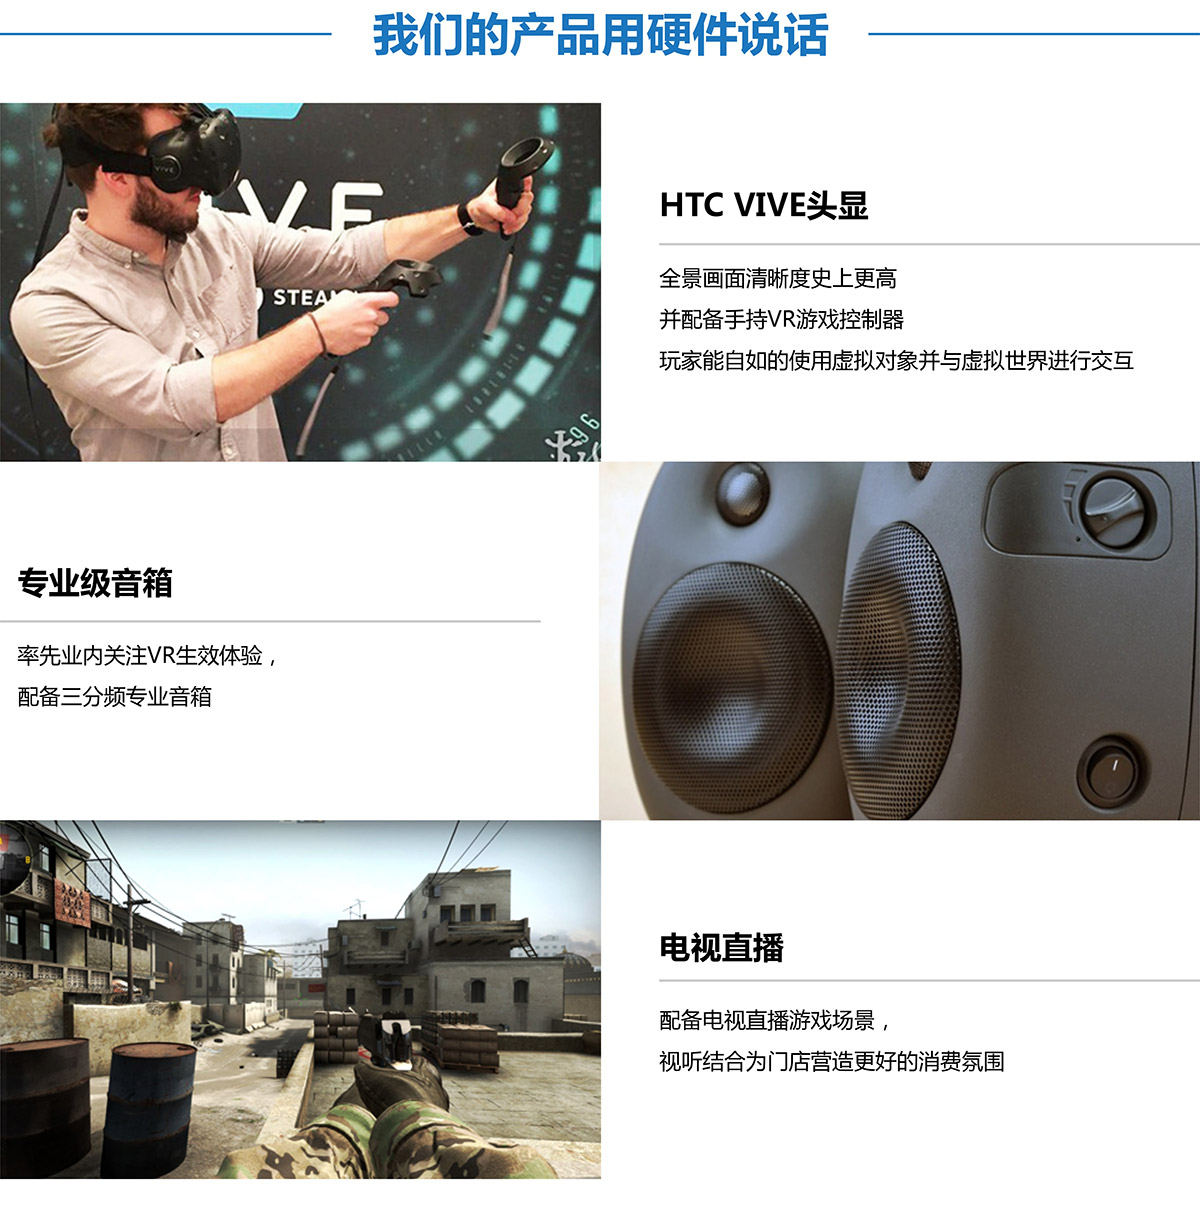 消防逃生VR探索用硬件說話.jpg